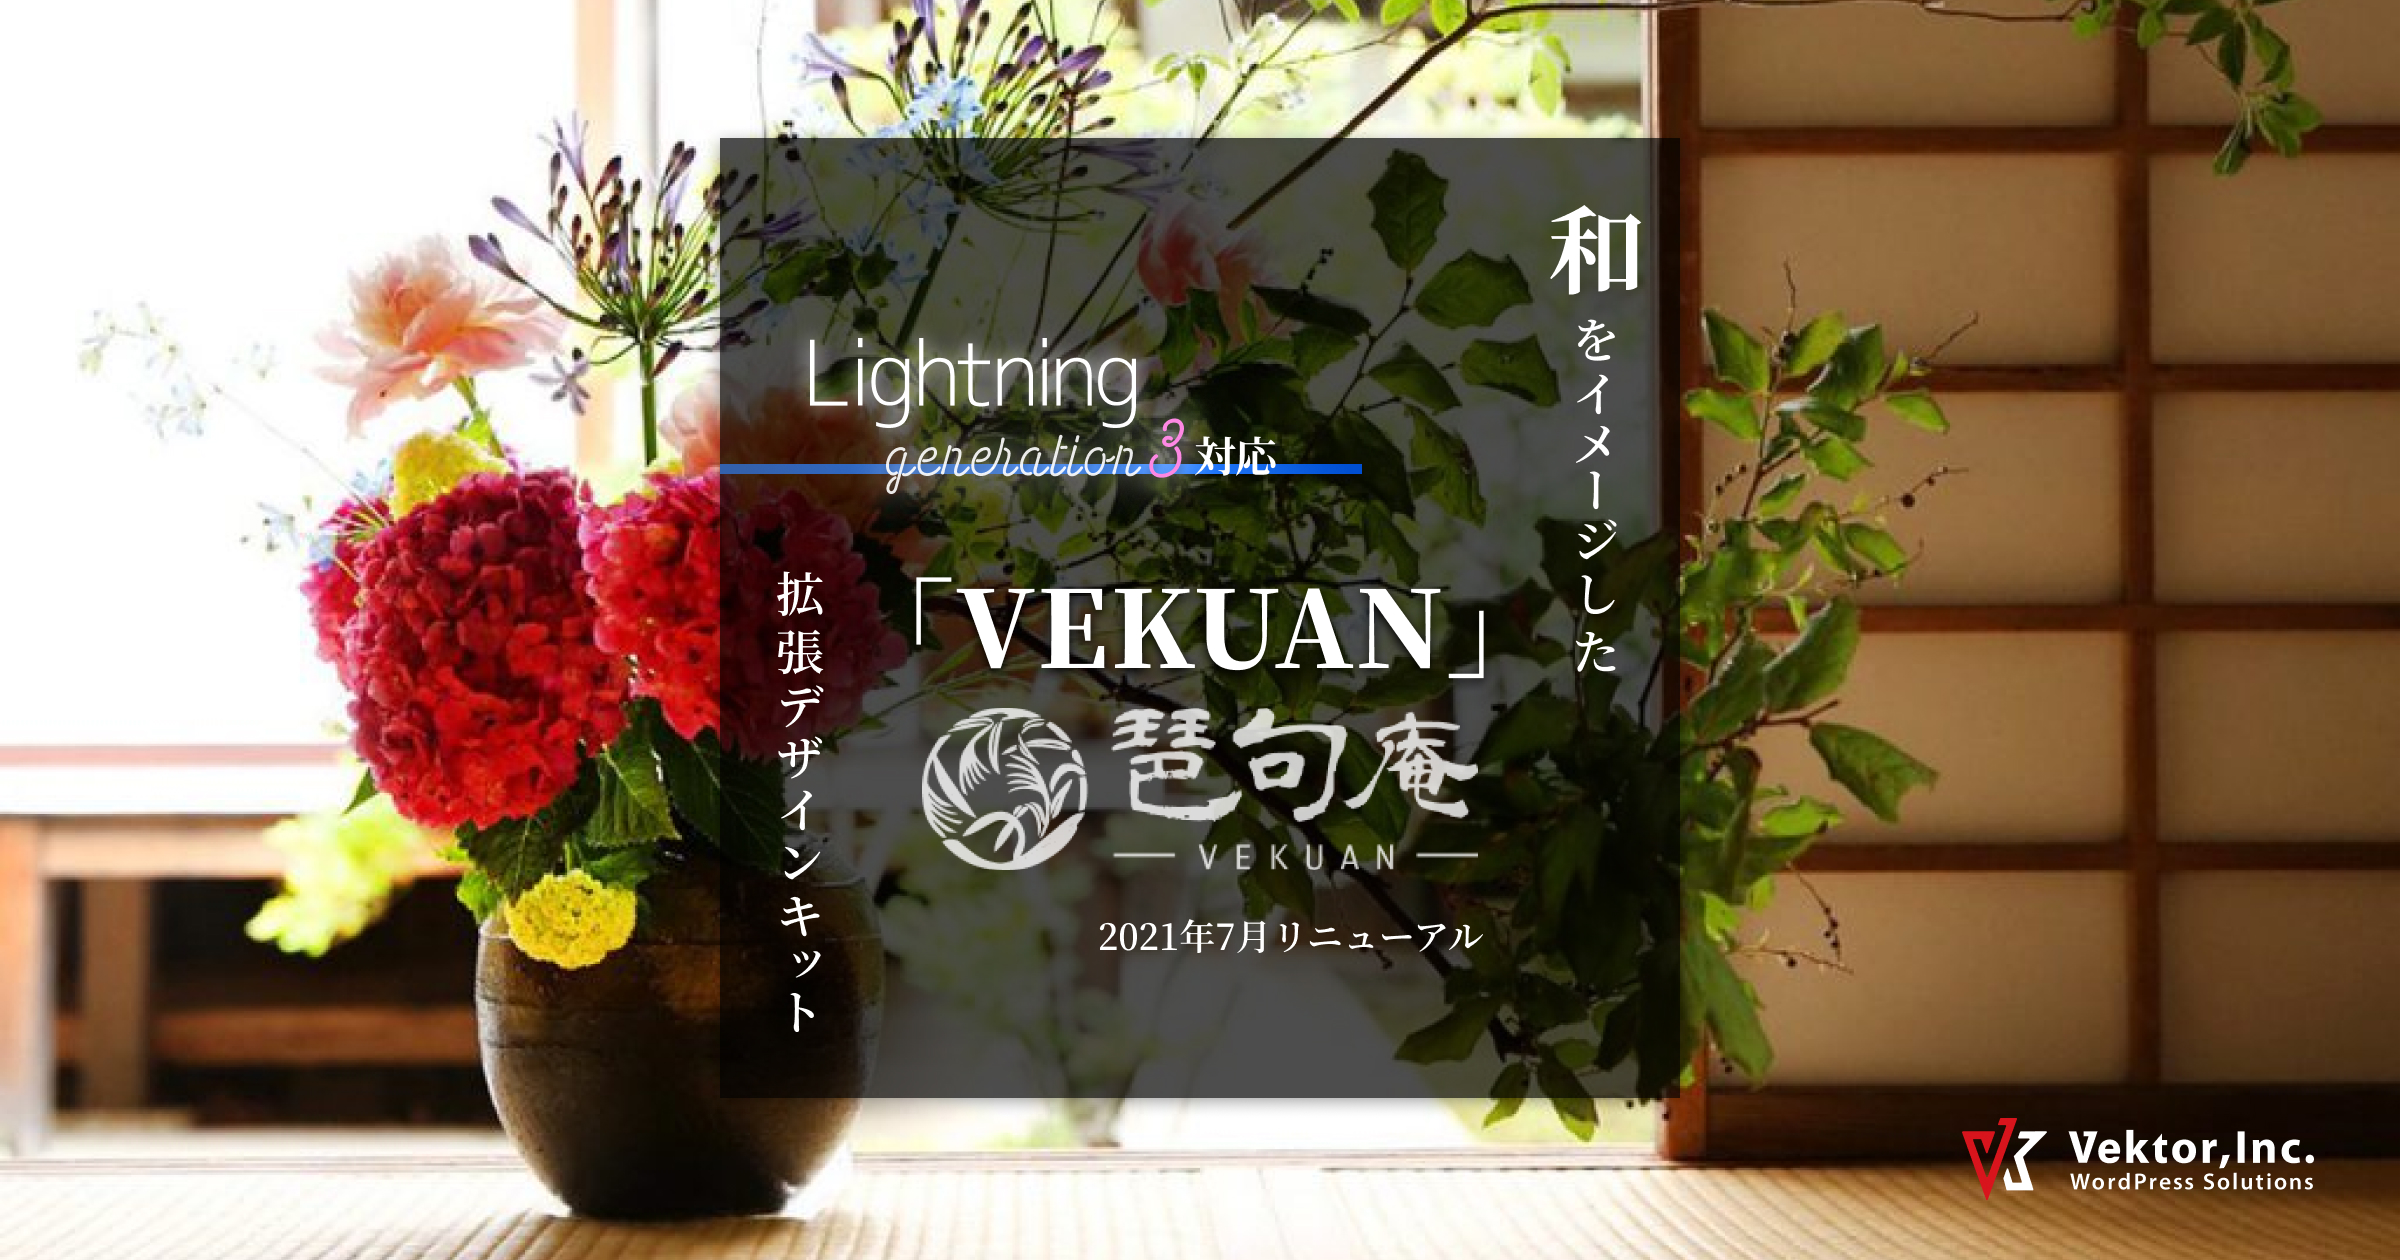 和をイメージした Lightning G3対応スキン Vekuan 旅館サイト向けコンテンツデータ 専用ブロックパターン一式をまとめた拡張デザインキットを販売します 株式会社ベクトル